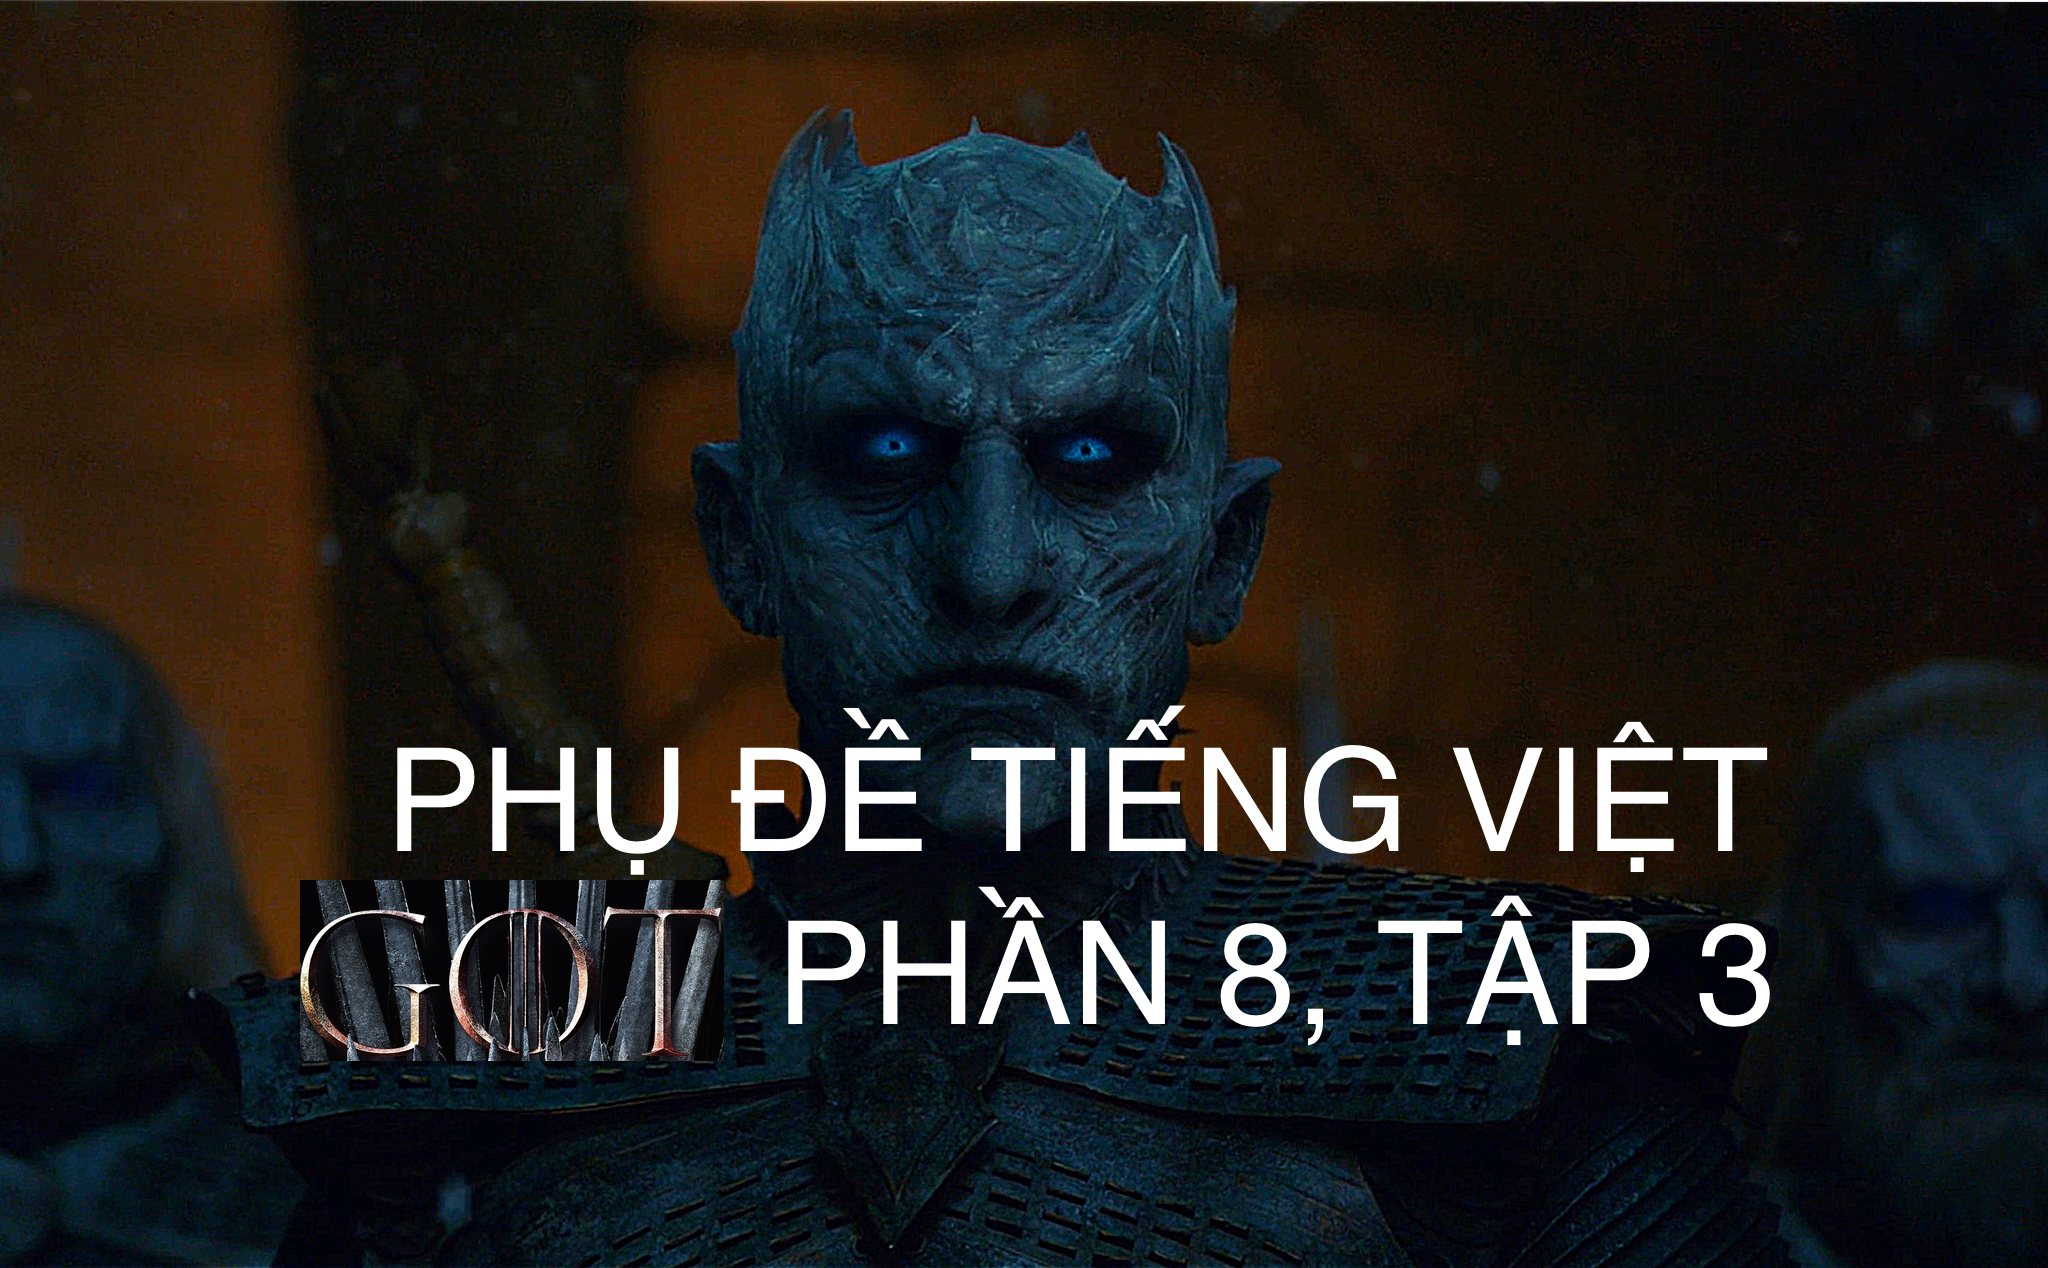 Phụ đề tiếng Việt - Game of Thrones Phần 8, Tập 3 - Đại Chiến giữa người và Bóng Trắng